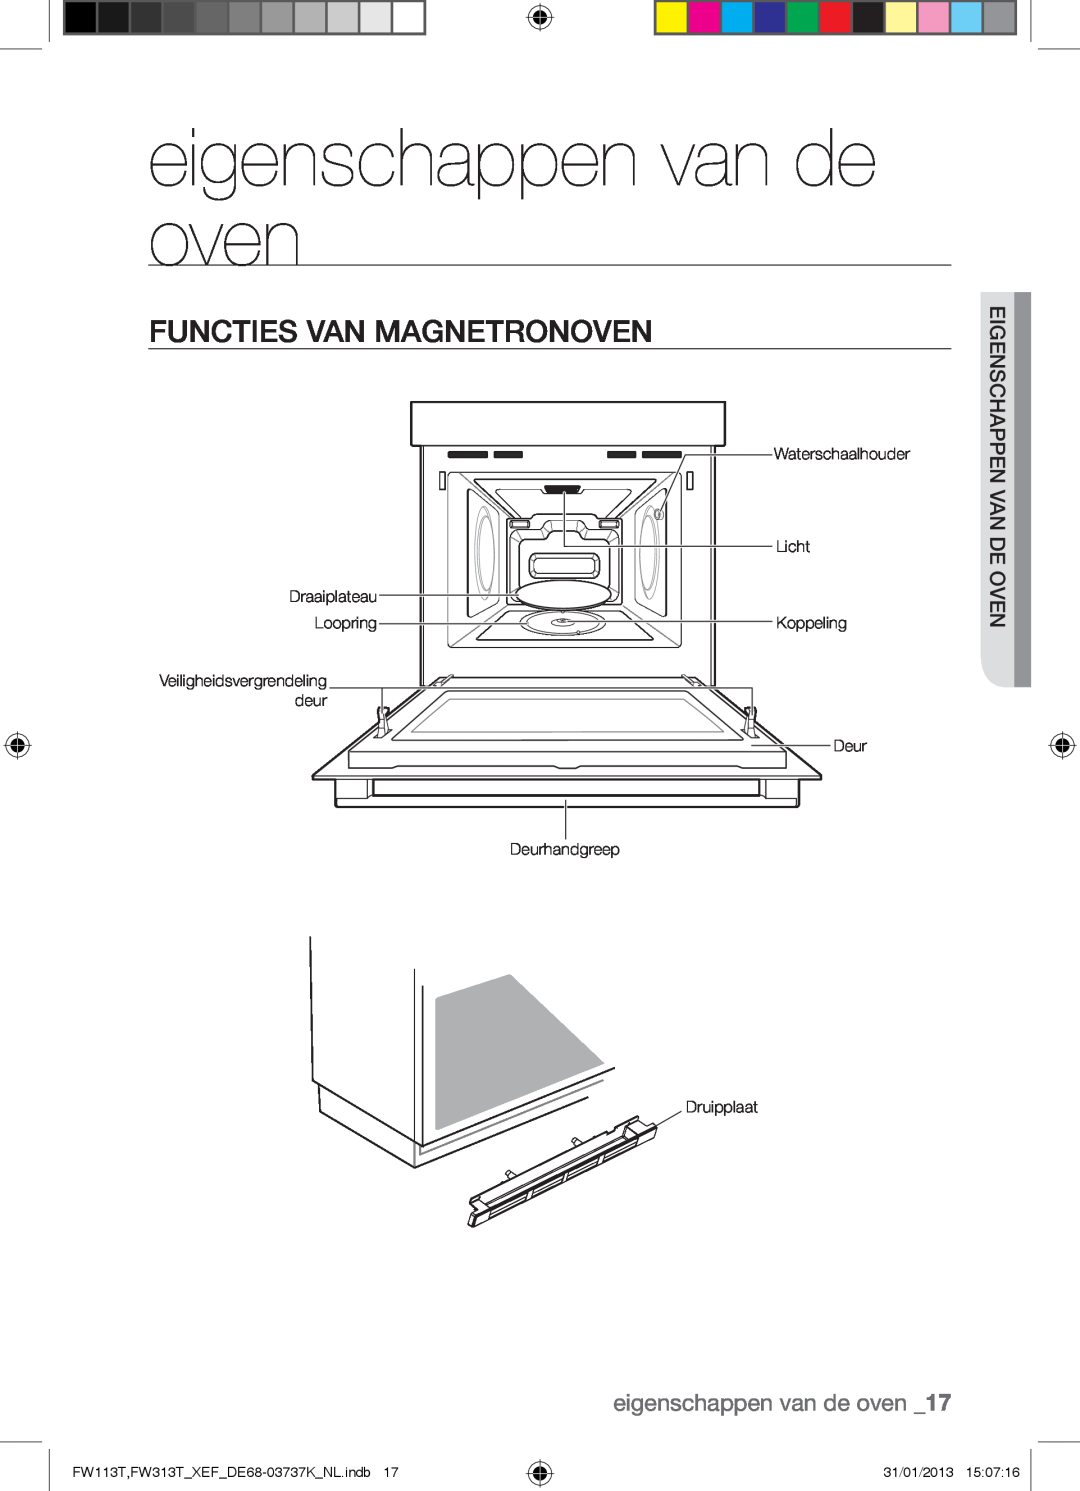 Samsung FW113T002/XEF manual eigenschappen van de oven, Functies Van Magnetronoven, FW113T,FW313TXEFDE68-03737KNL.indb 